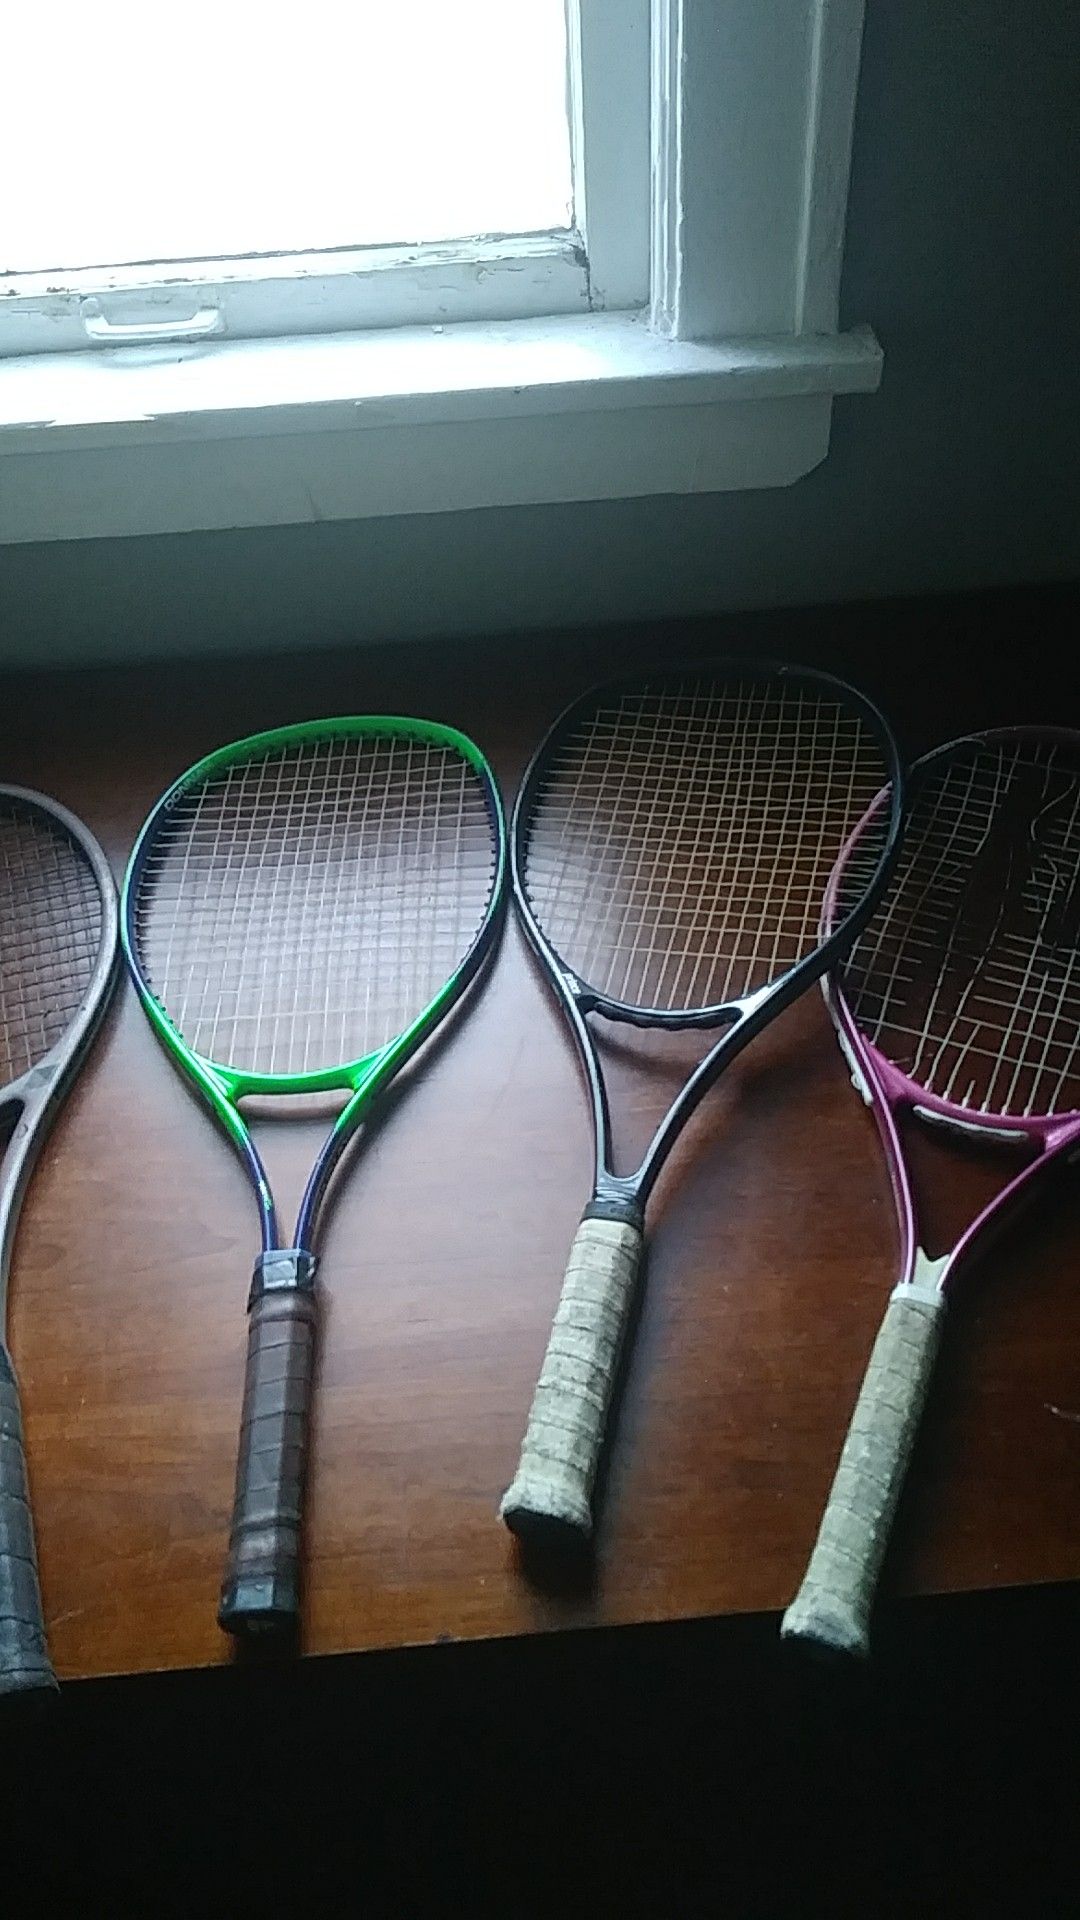 4. Tennis. Rackets